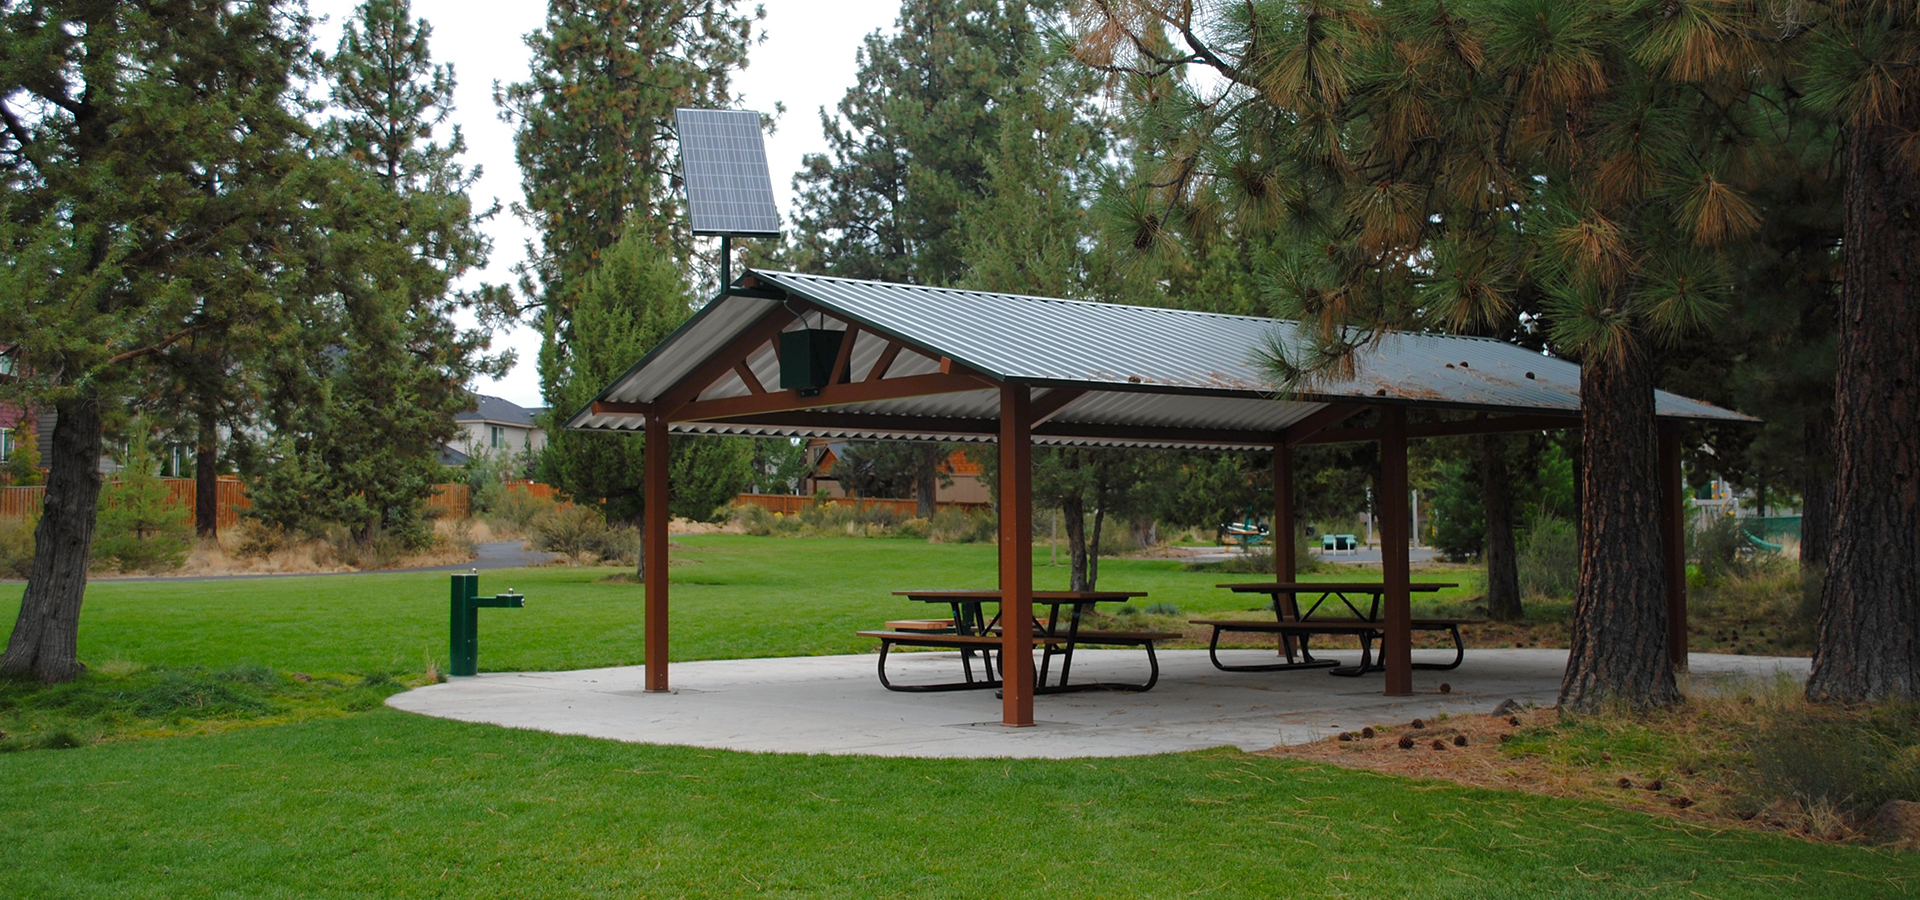 Pine Ridge Park picnic shelter.